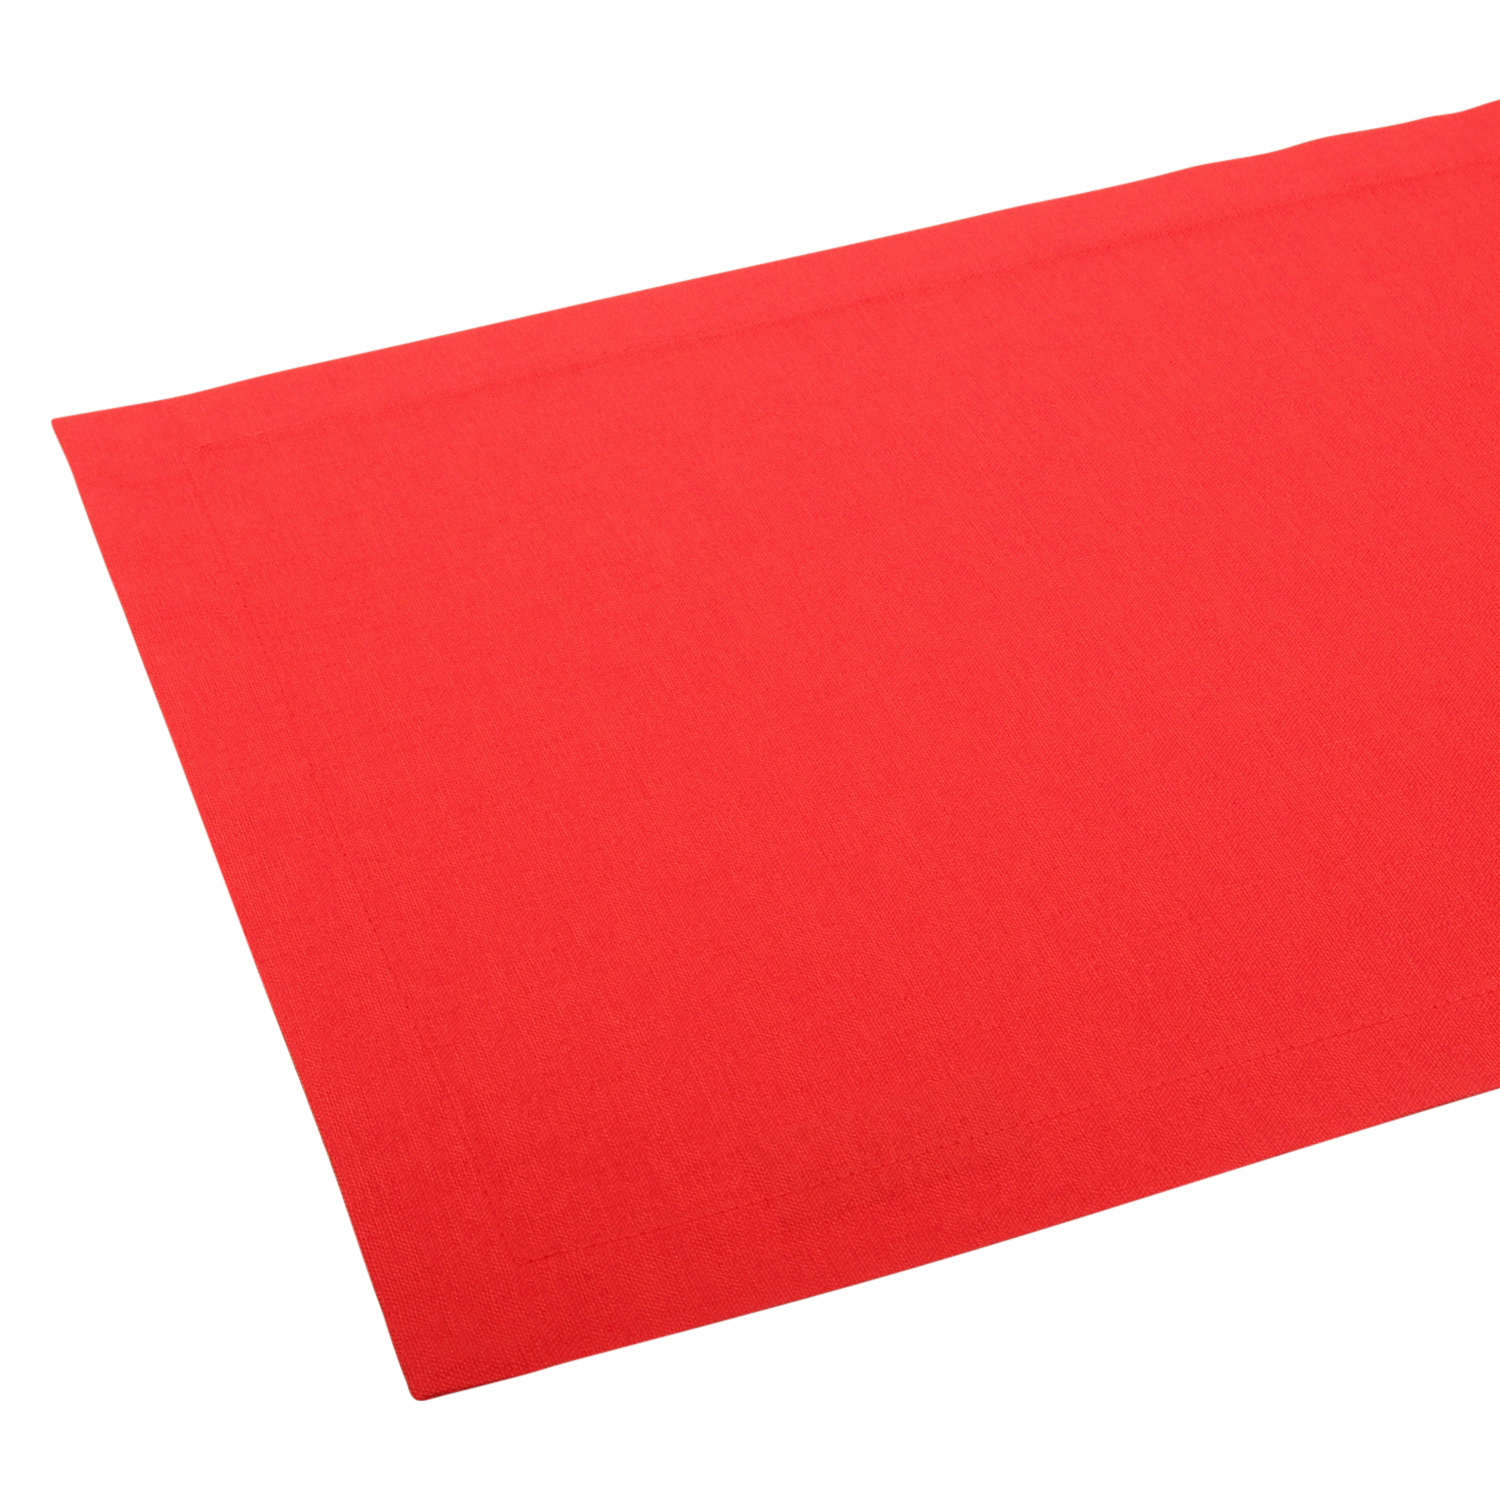 ROMODO Tischläufer Betim 40 x 140 cm rot mit Kuvertecken